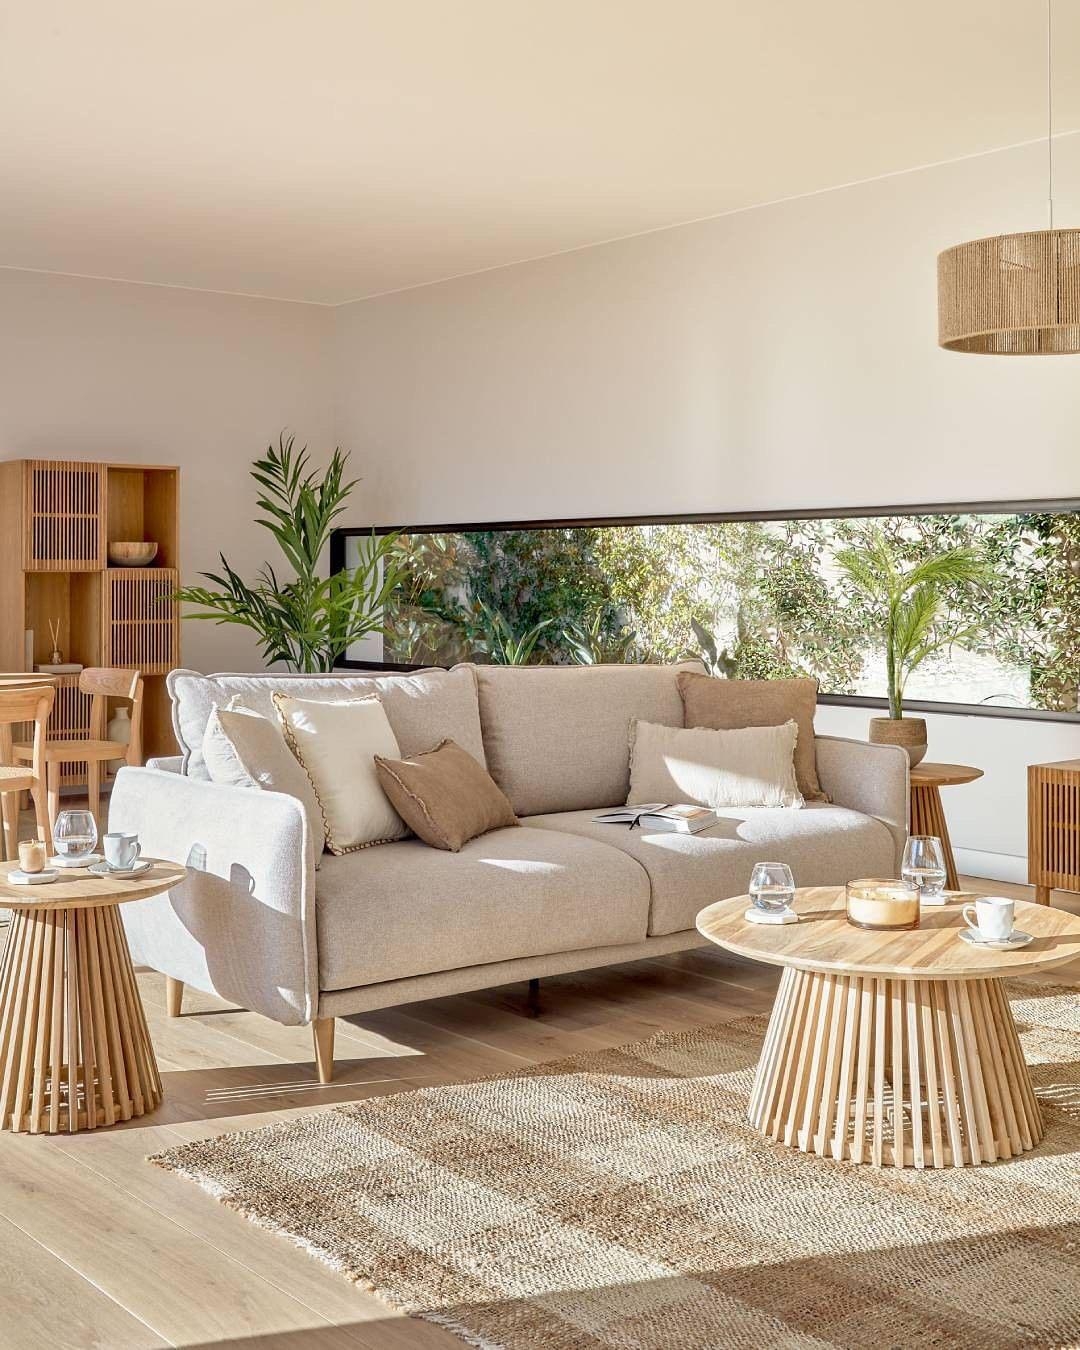 Natürlichkeit, Nachhaltigkeit ... #sofa #möbel #nachhaltigwohnen #wohnzimmer #esszimmer #homesweethome #dekoliebe 